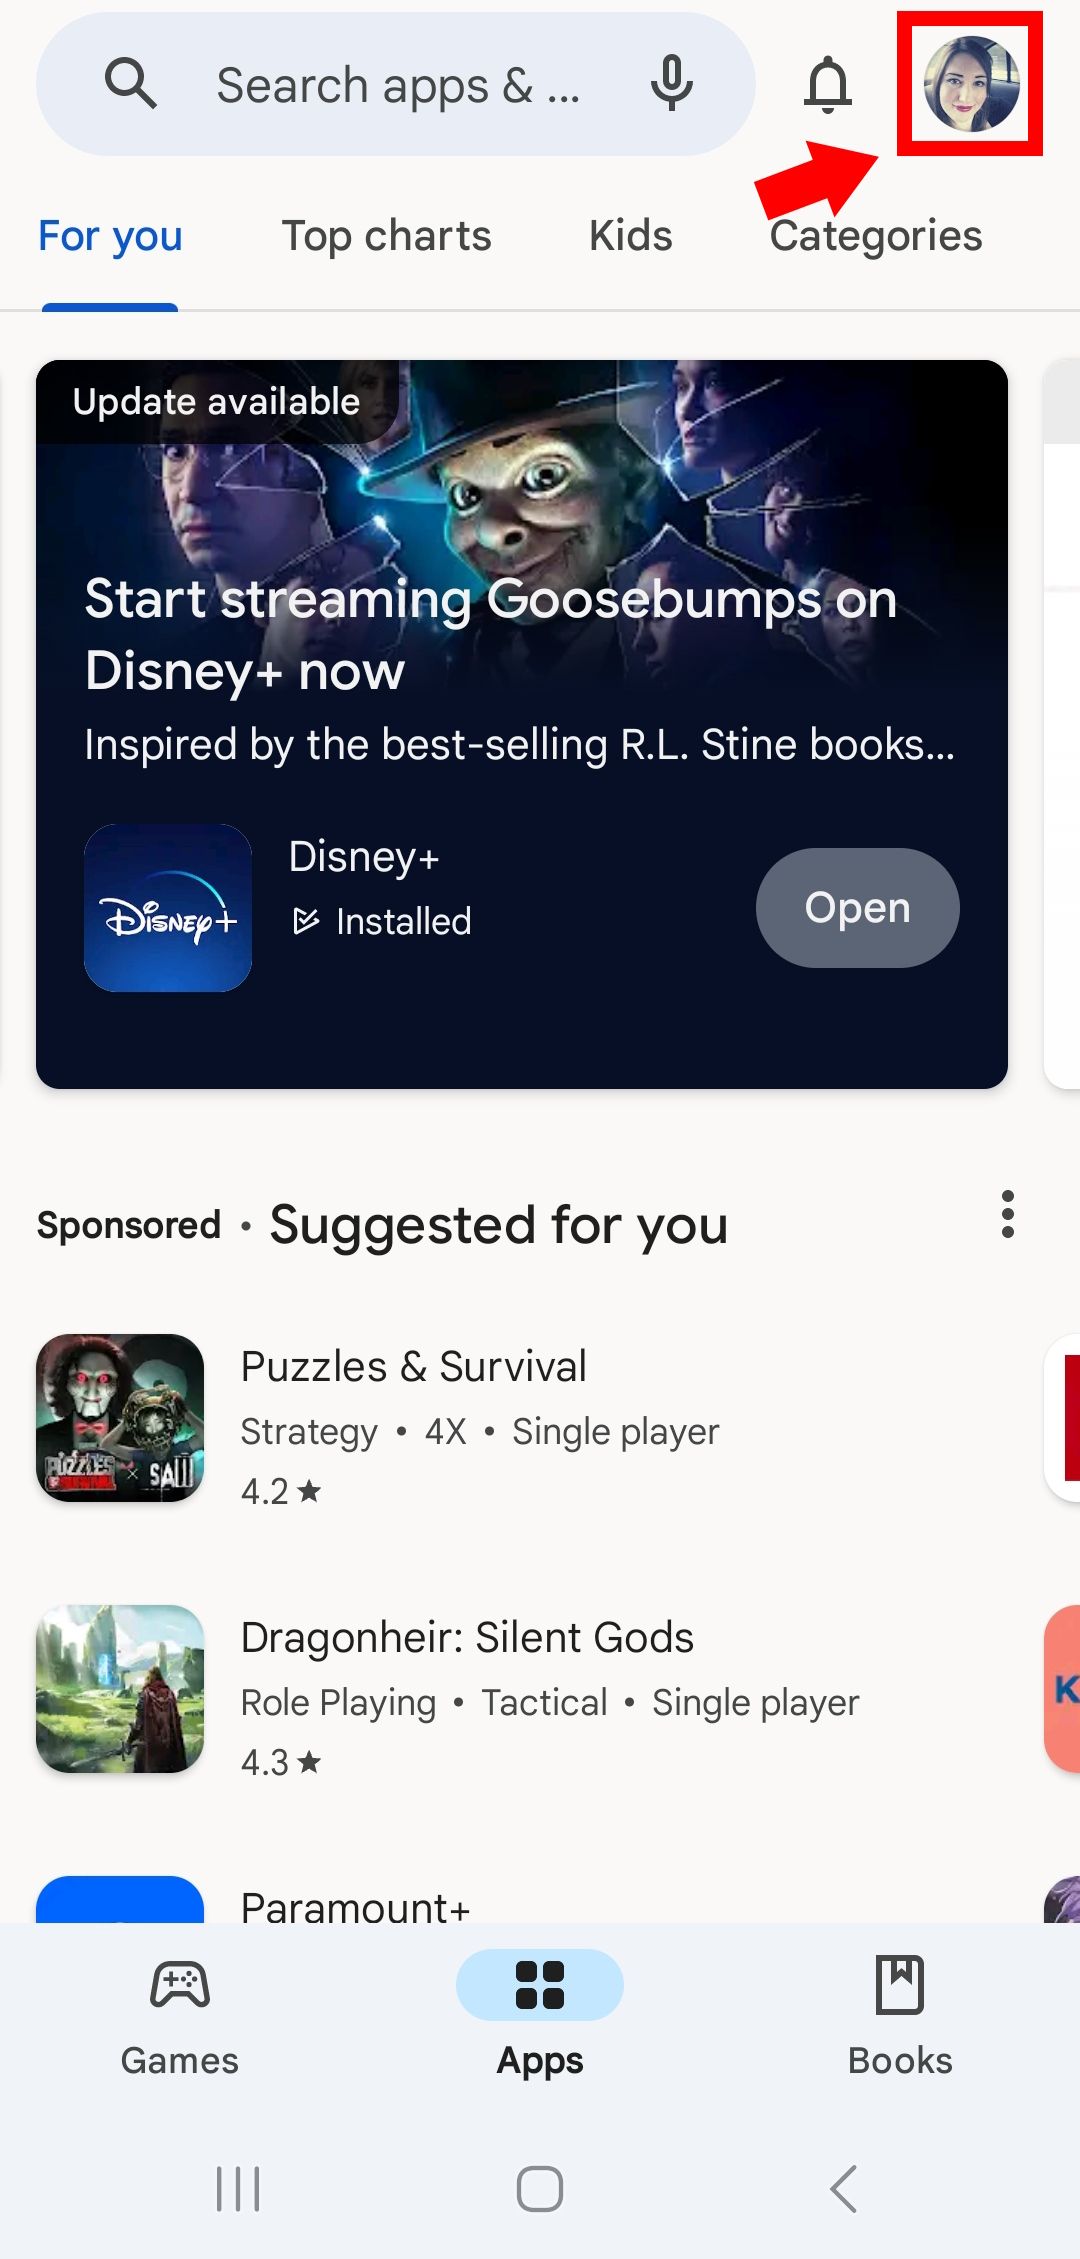 seta sólida vermelha apontando para o contorno quadrado no ícone do perfil da Google Play Store